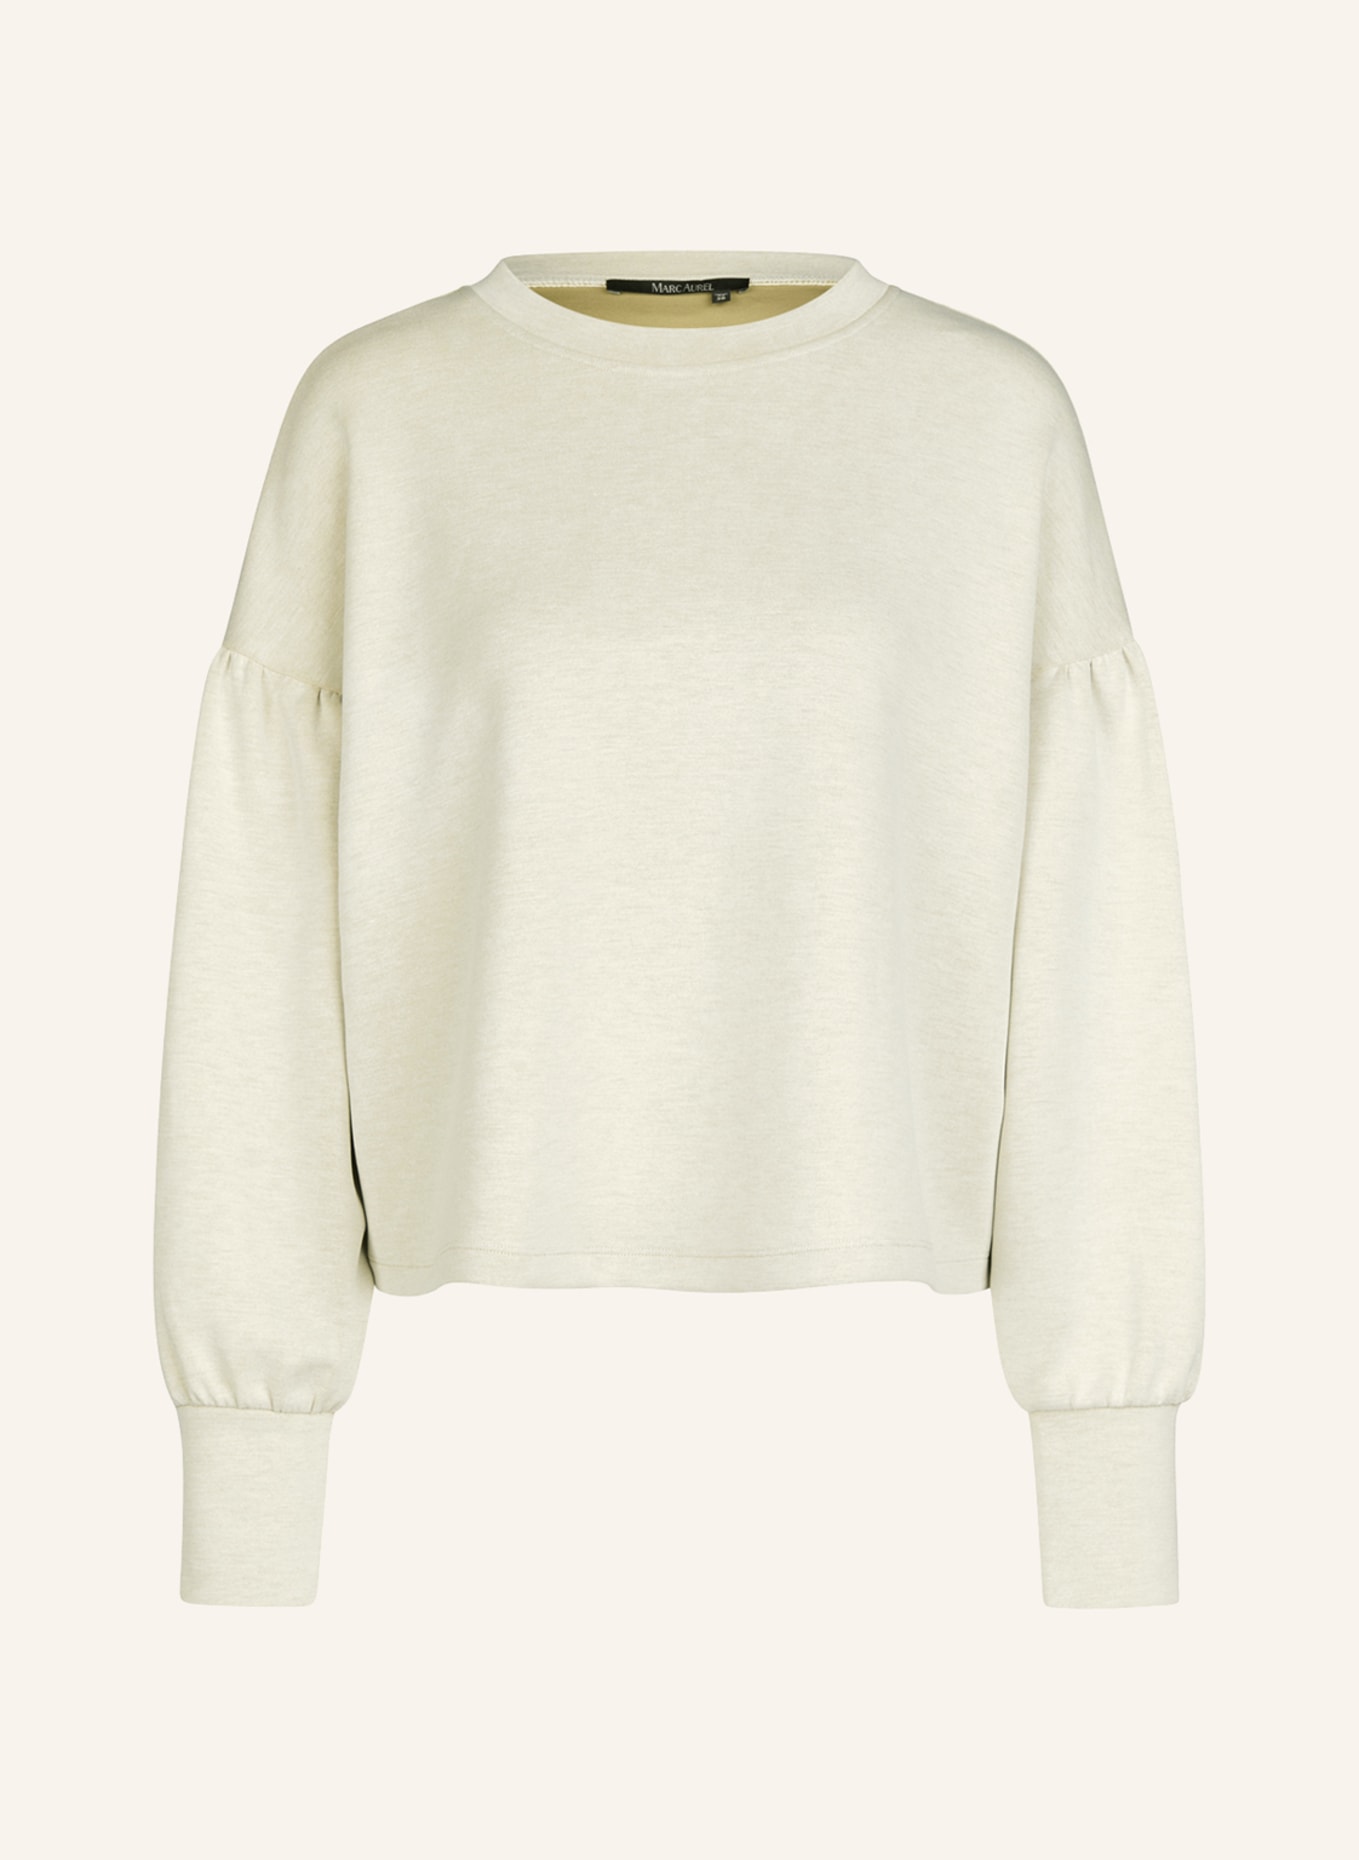 MARC AUREL Sweatshirt, Farbe: BEIGE (Bild 1)